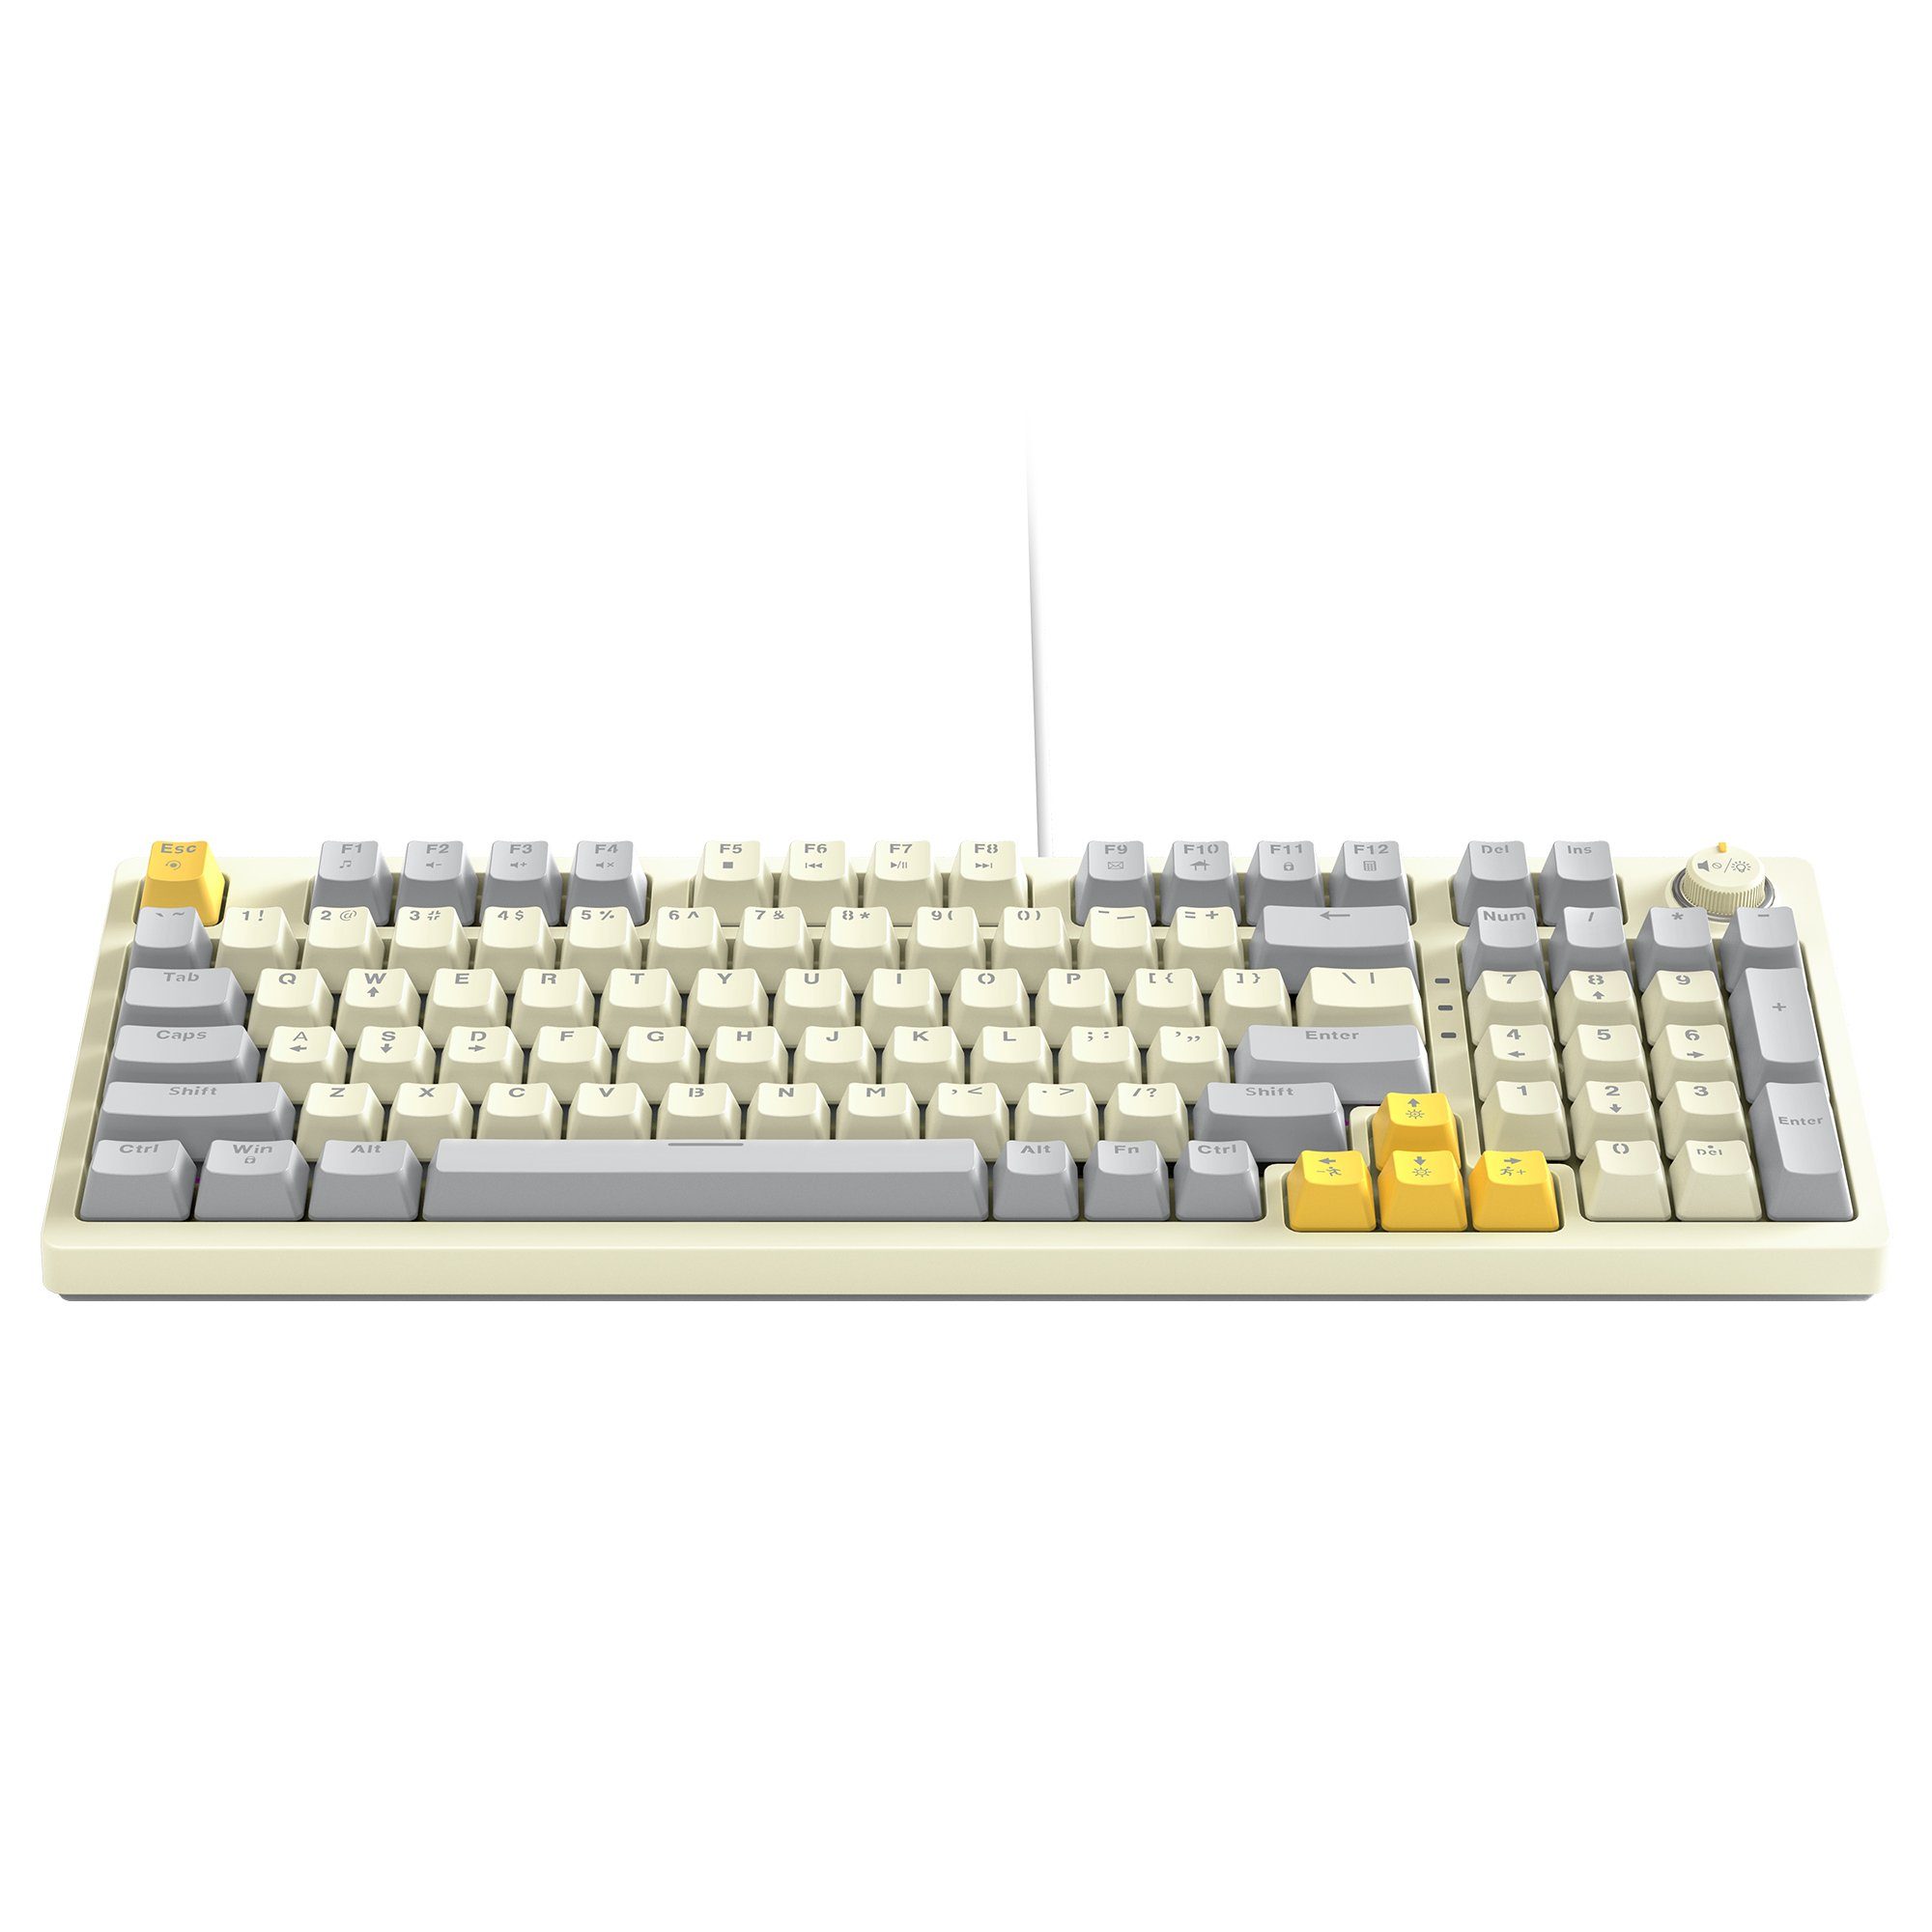 BUMHUM Nicht deutsche mechanische und RGB-Gaming-Tastatur (Zweifarbige Gaming-Tastatur Echte Doppel- Tastatur Kabe) Dreifarbige mit Weiß Tastatur,RGB-Beleuchtung